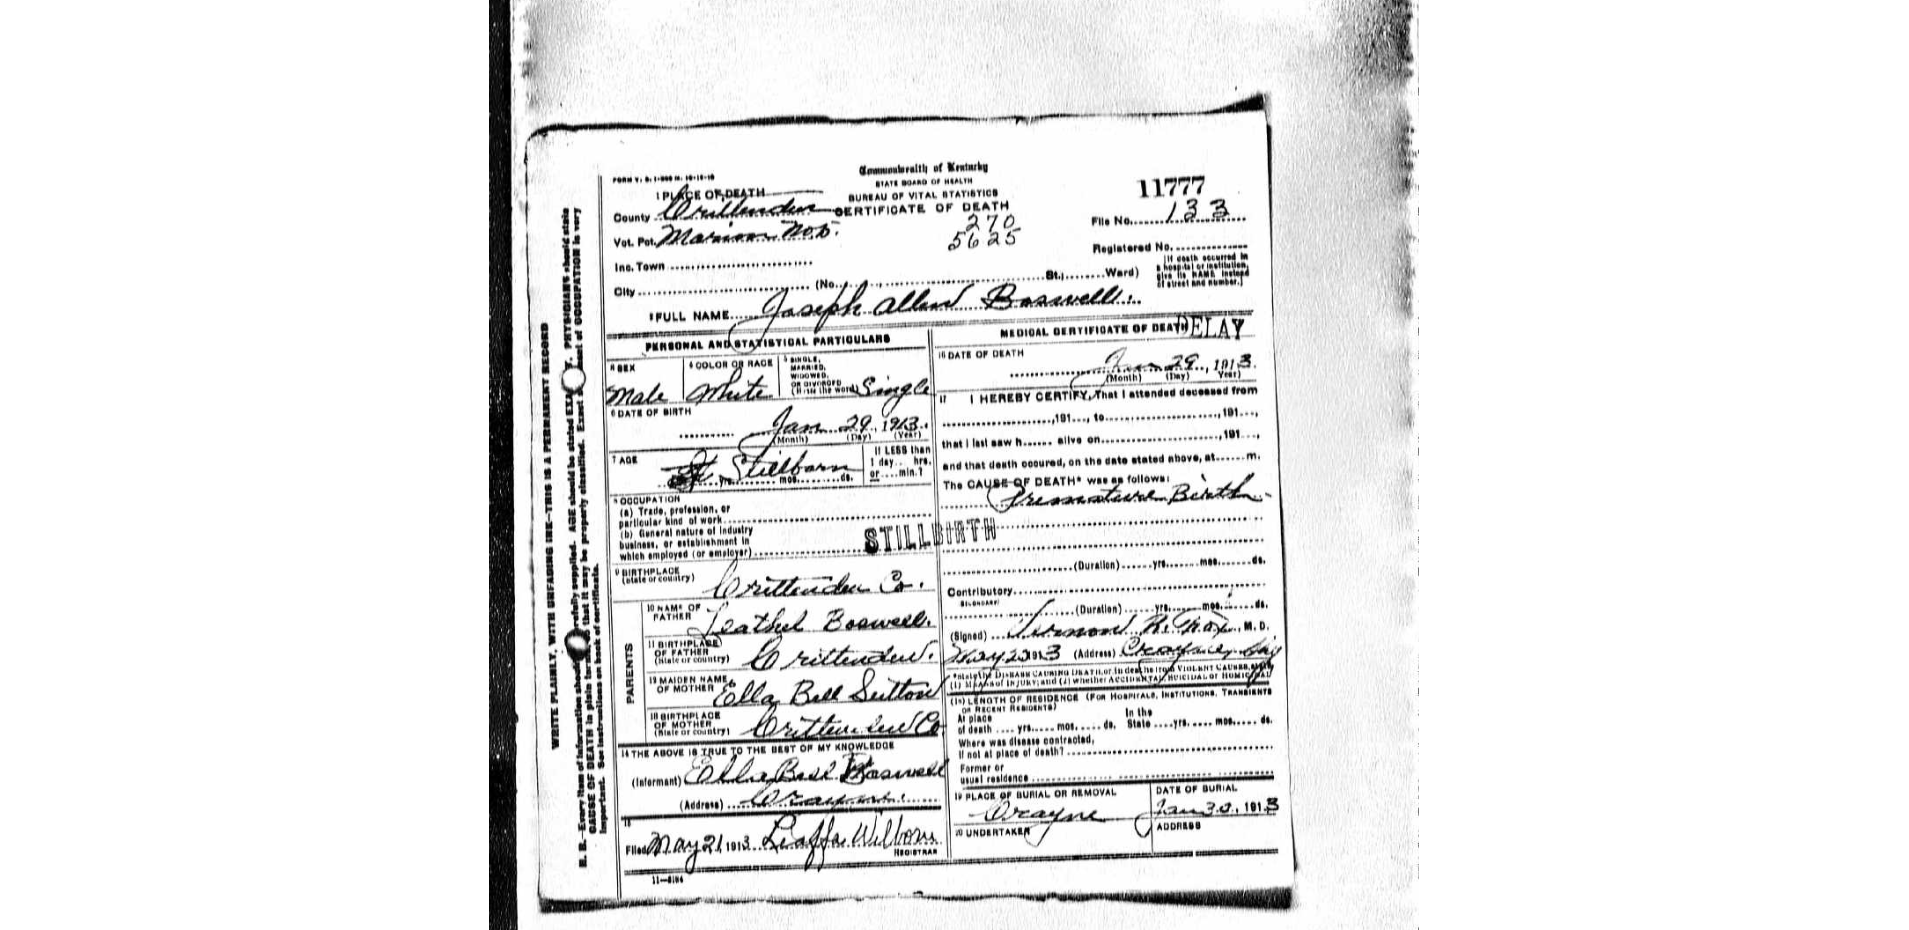 Joseph Allen Boswell Death Certificate